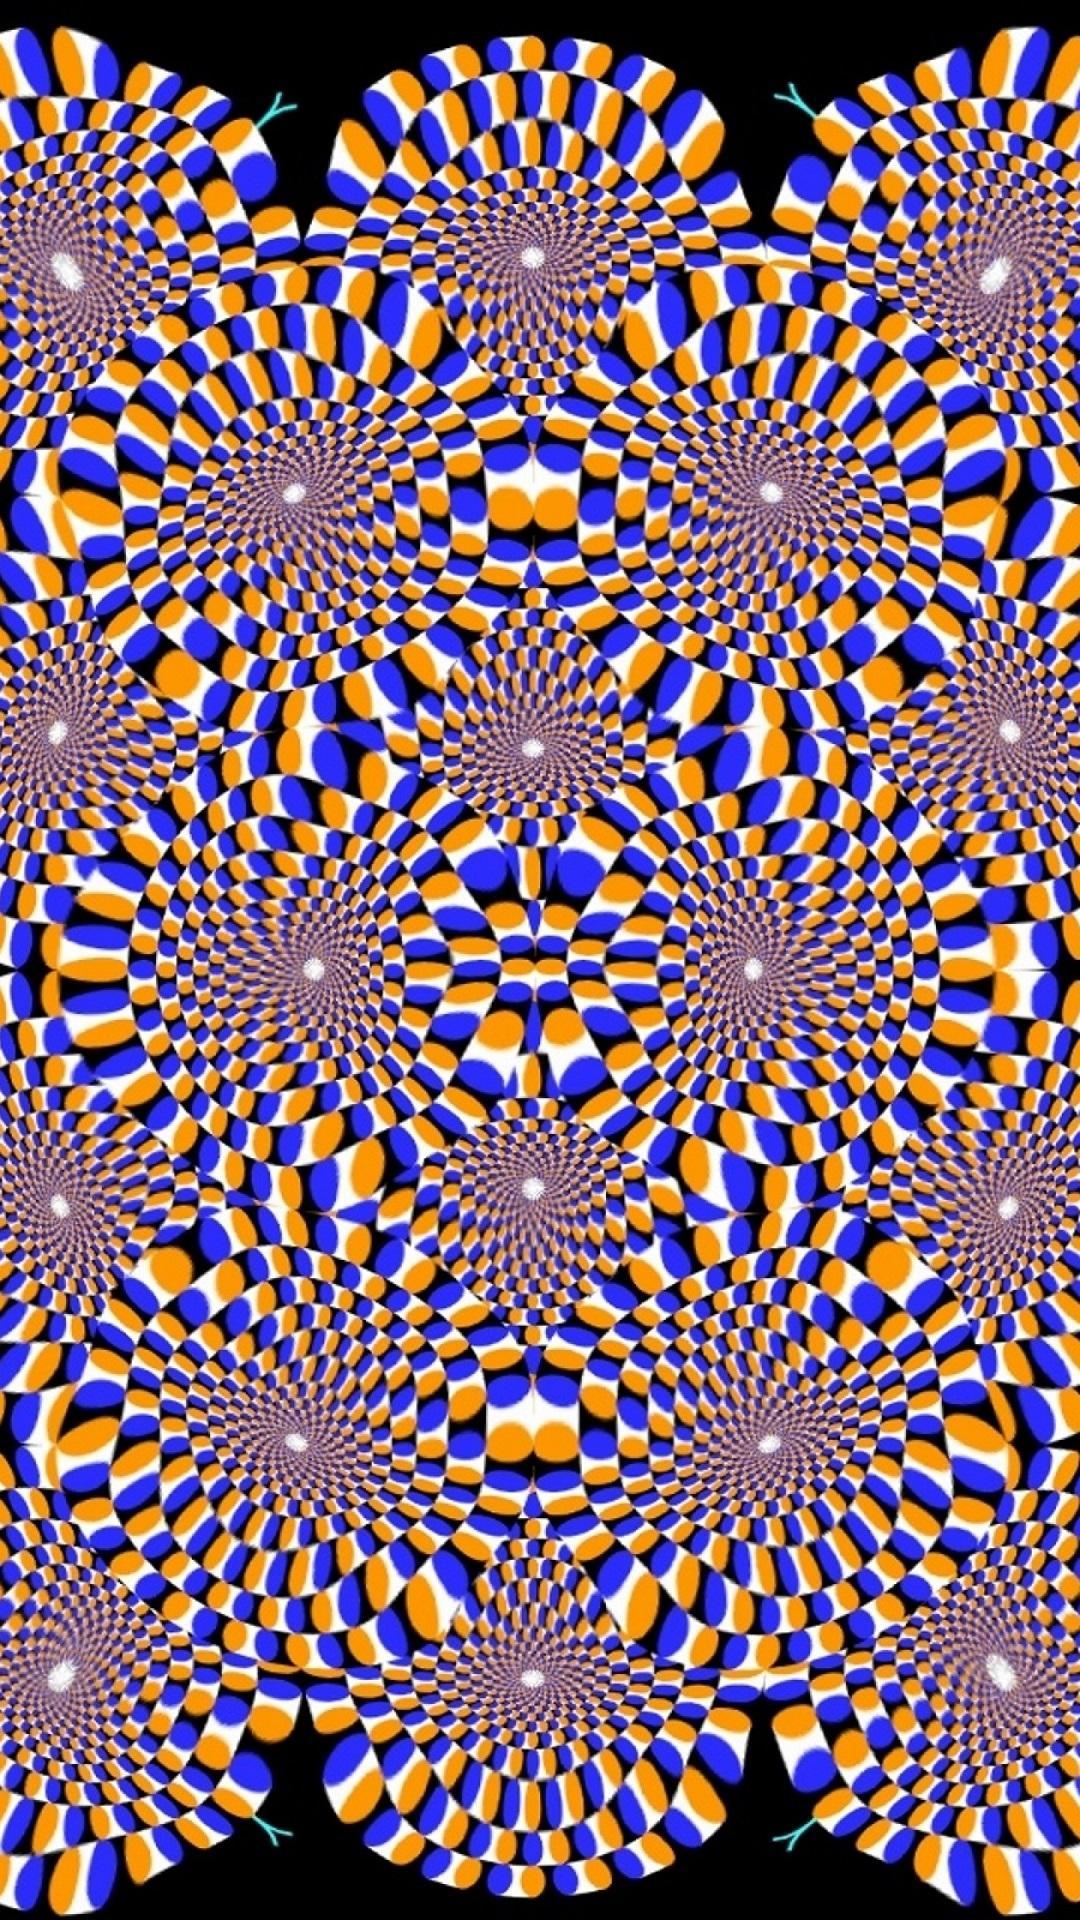 Движущаяся картина 3. Оптические иллюзии галлюцинации. Живая иллюзия. Движущая картина. Иллюзии для глаз.